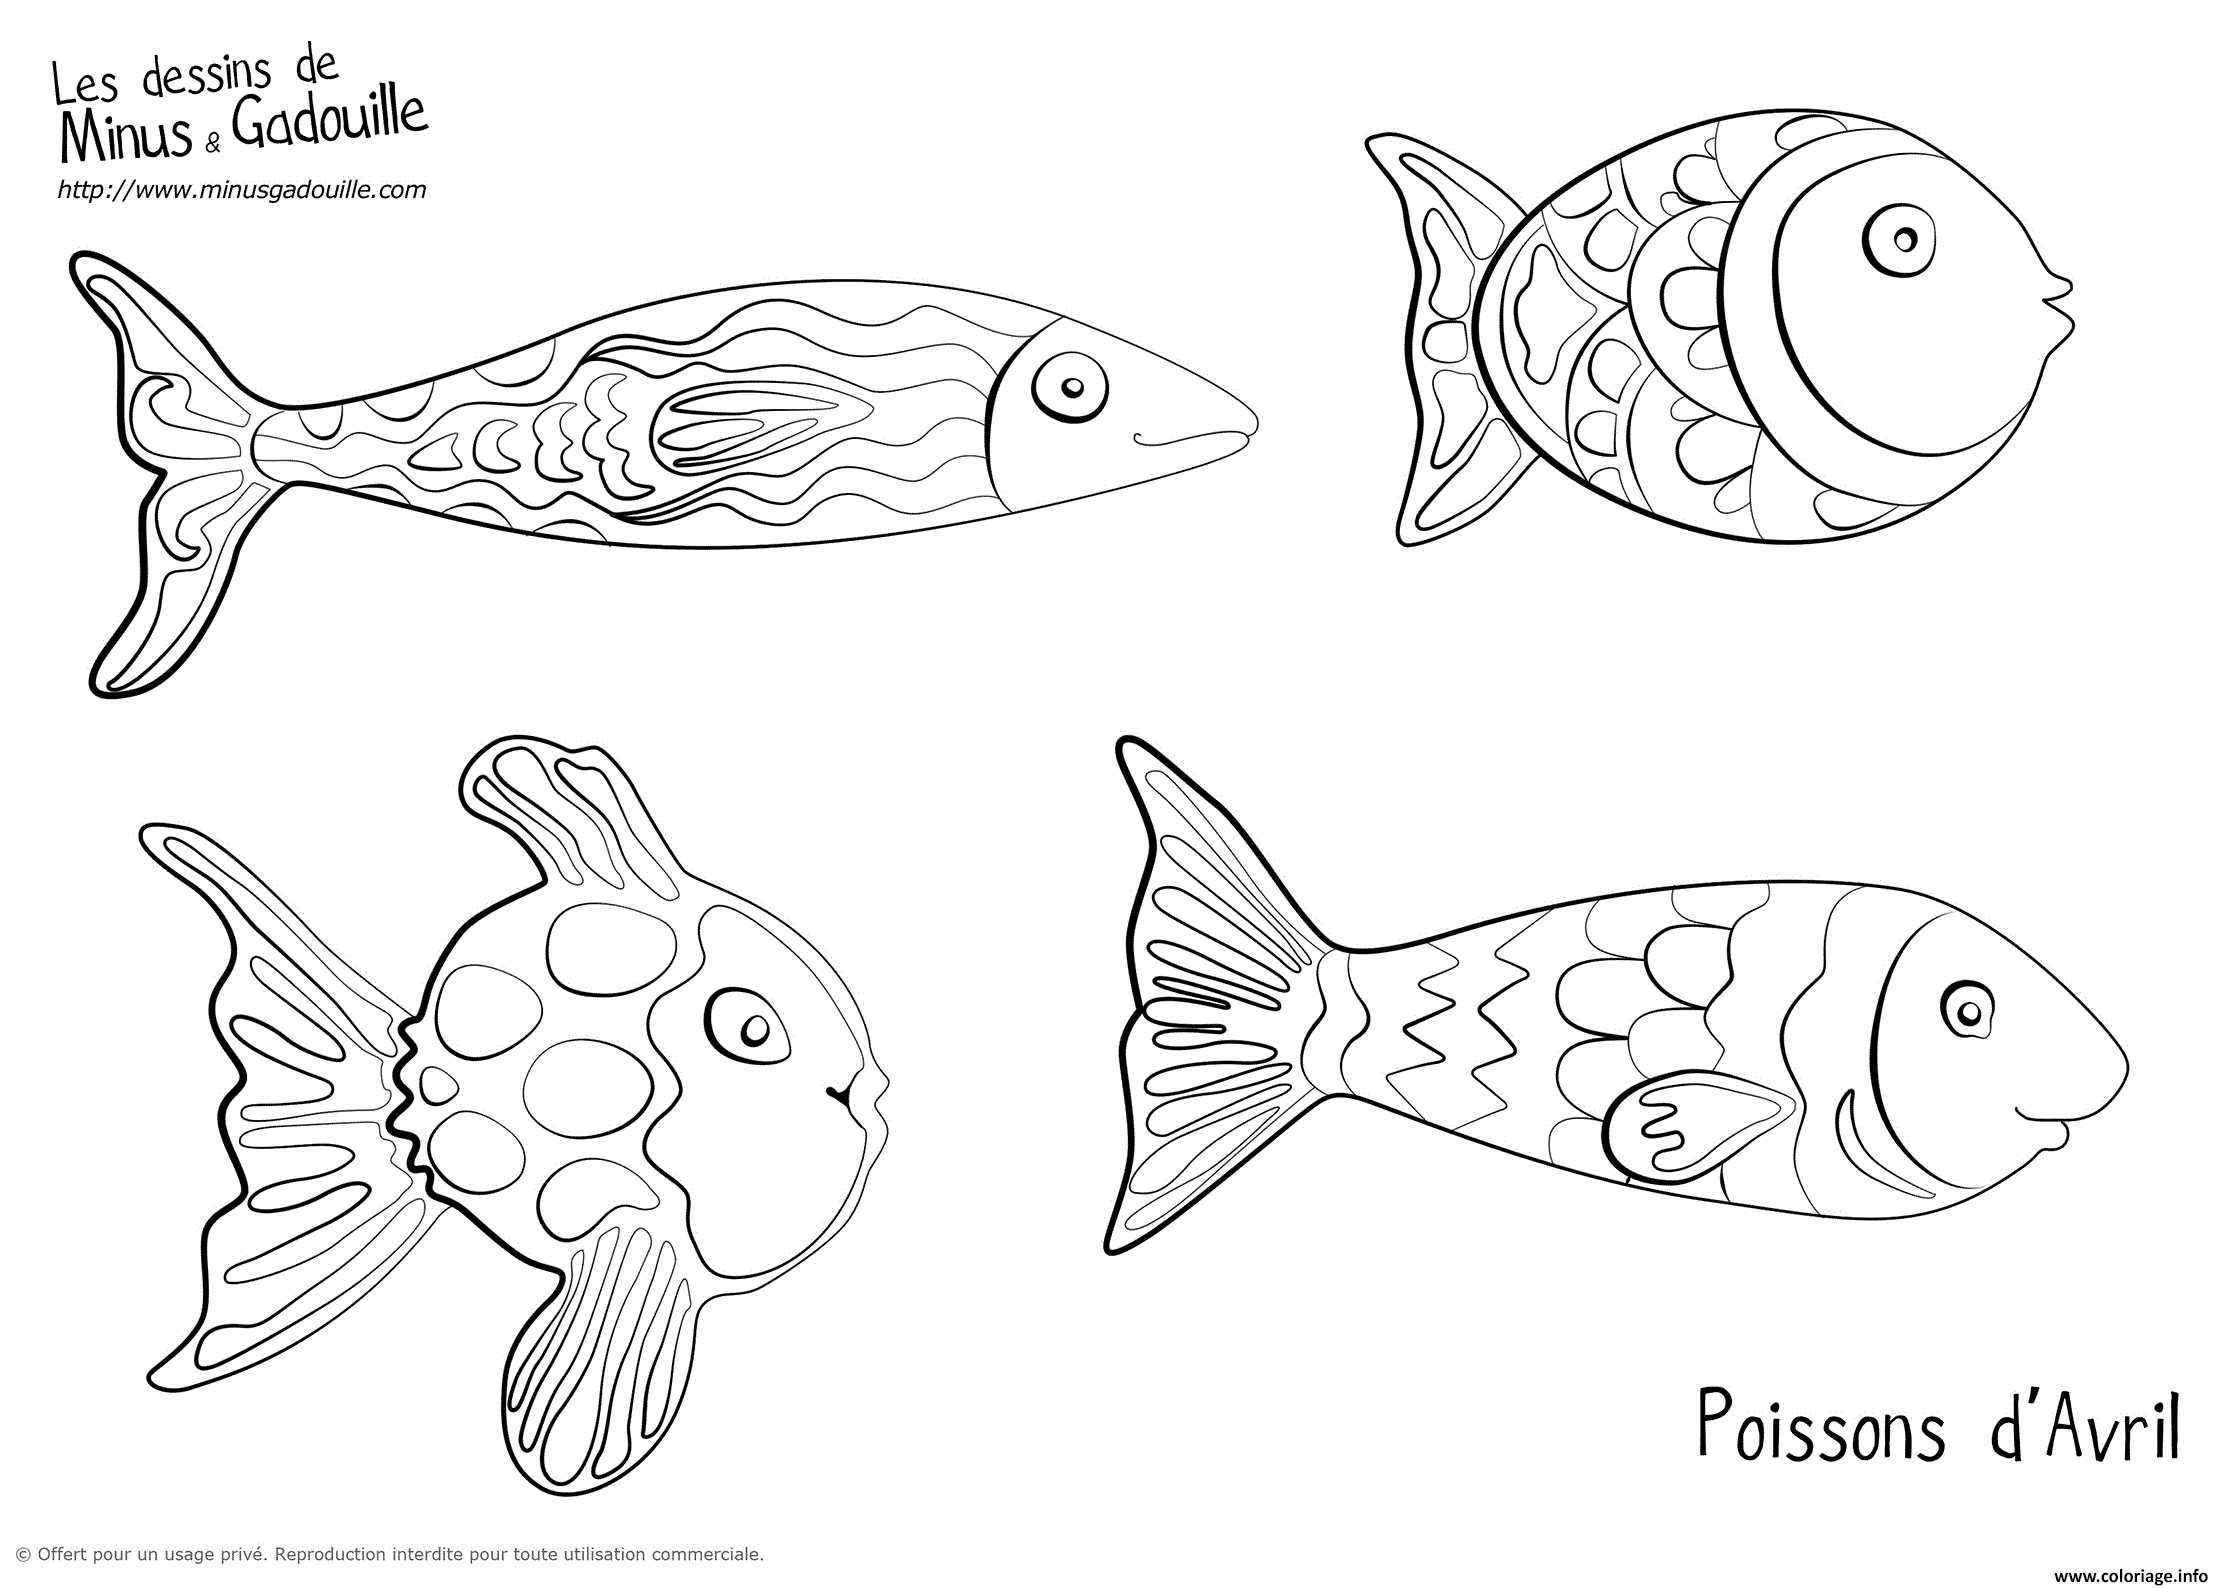 Dessin poisson d avril par minus et gadouille Coloriage Gratuit à Imprimer